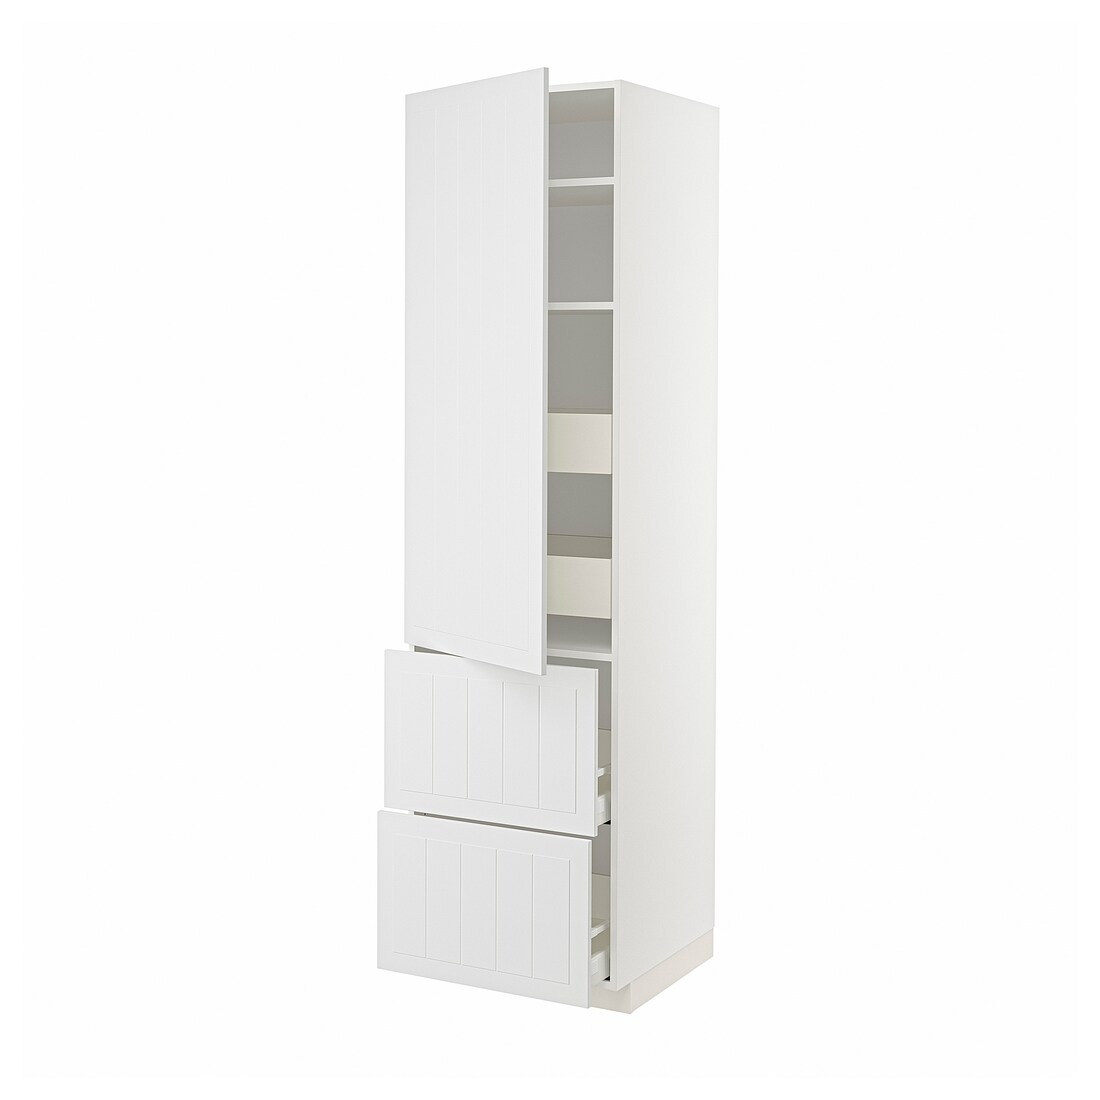 IKEA METOD МЕТОД / MAXIMERA МАКСИМЕРА Высокий шкаф с полками / ящиками, белый / Stensund белый, 60x60x220 см 89409335 894.093.35